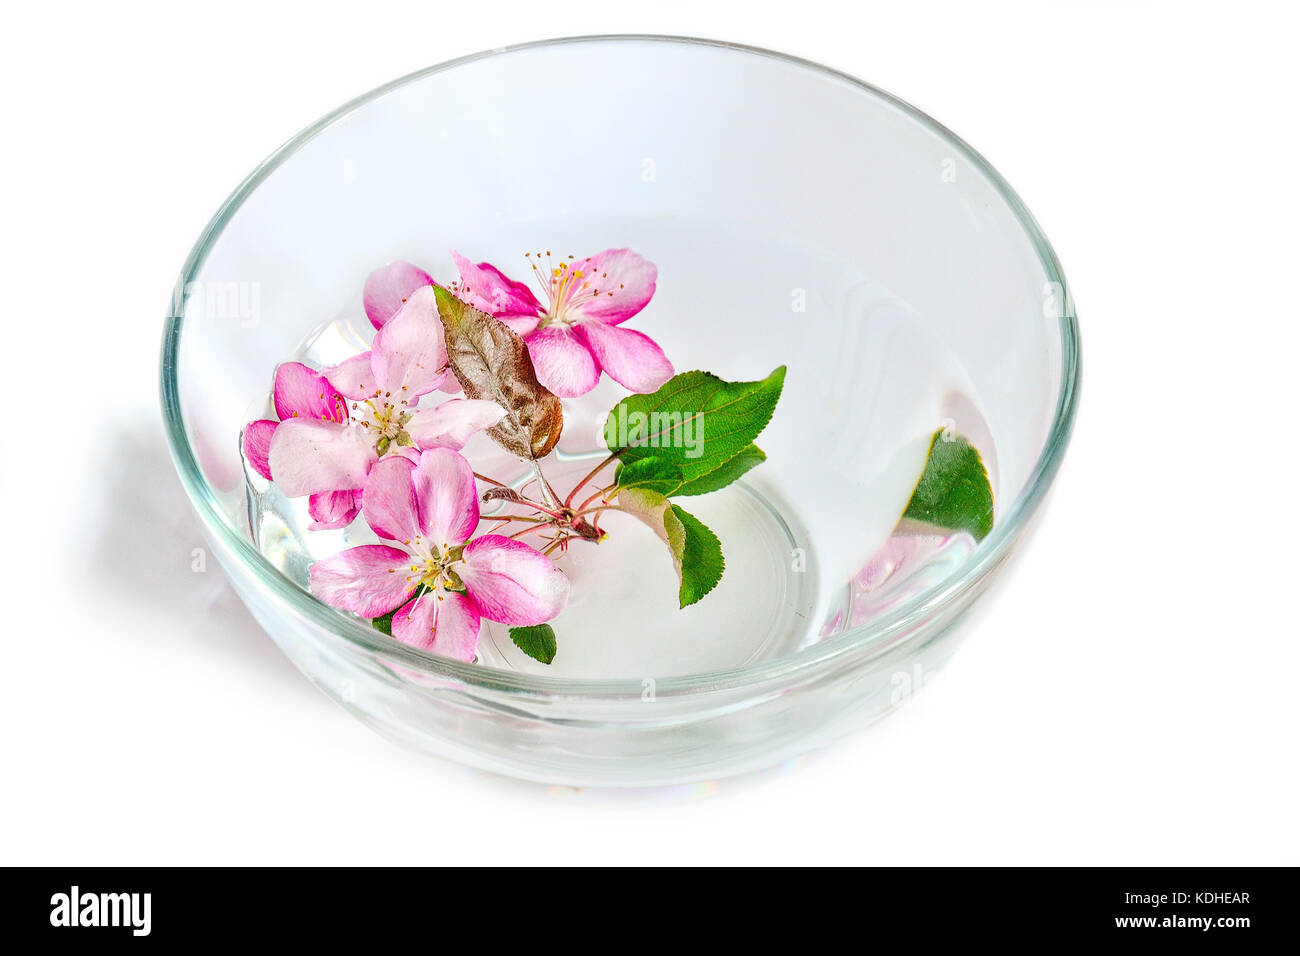 Frische rosa Kirsch- oder Apple tree Blumen schweben in die Glasschale mit Wasser. spa Behandlung, Aromatherapie und Hautpflege Konzept Stockfoto